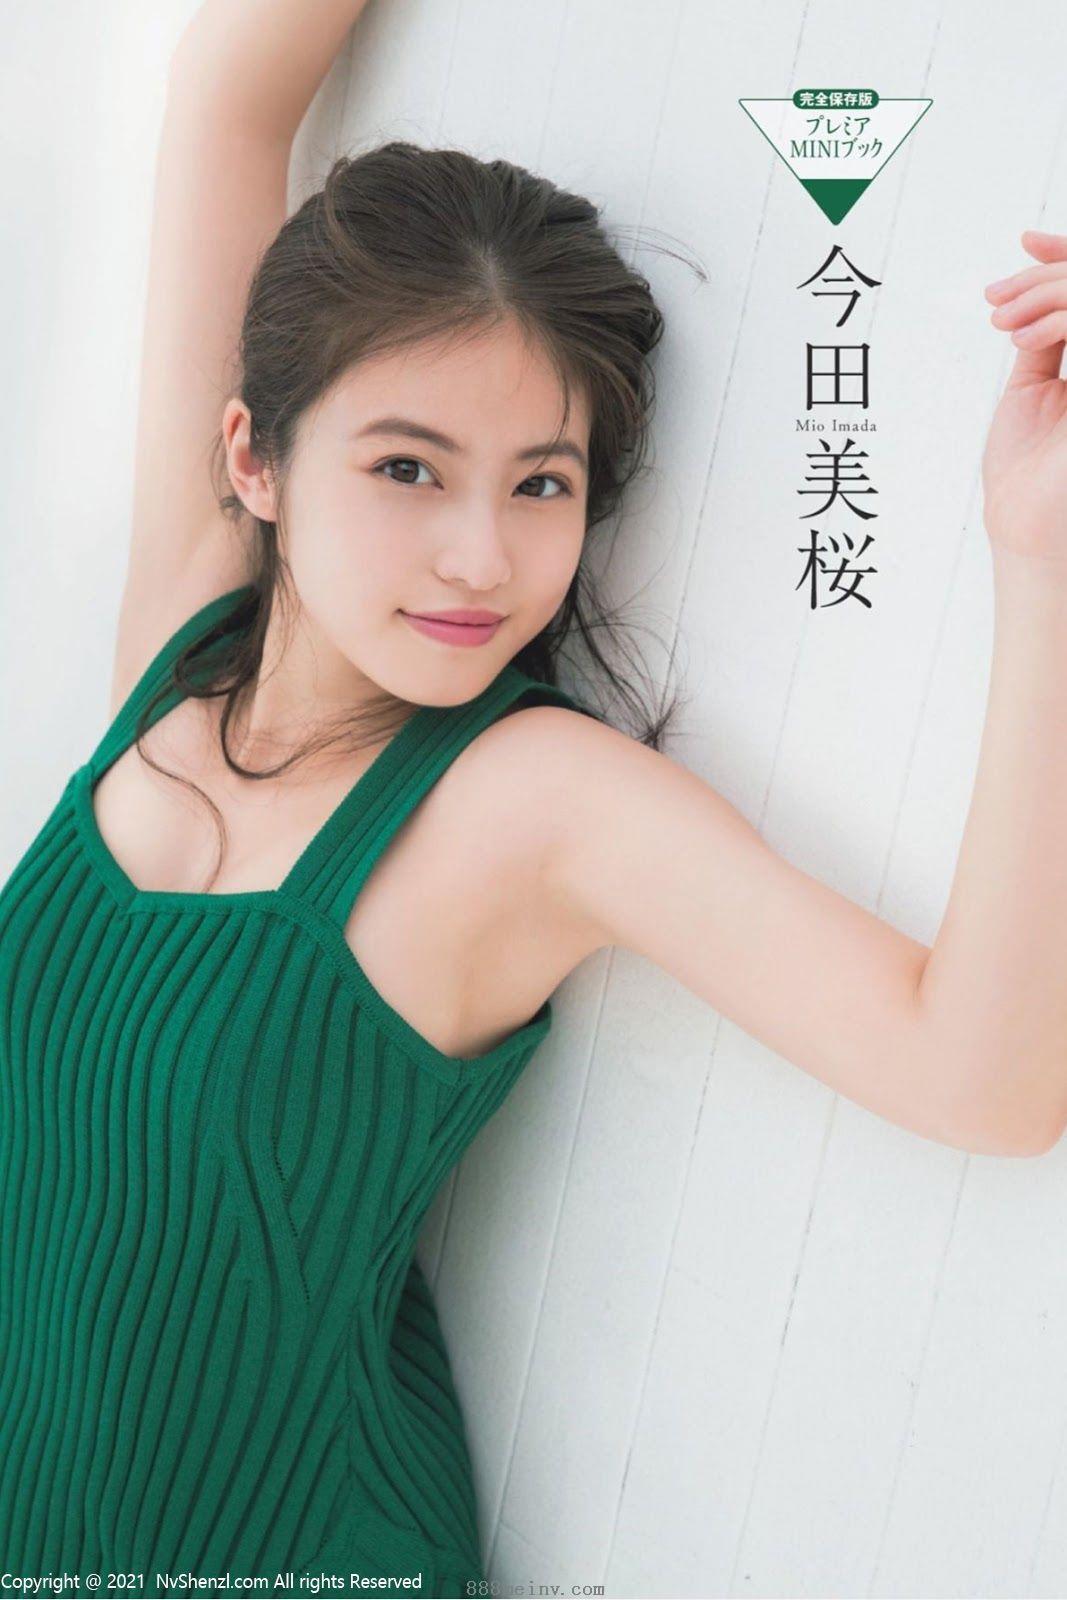 今田美桜, Imada Mio - Weekly Playboy, FLASH, FRIDAY, 2019高清写真